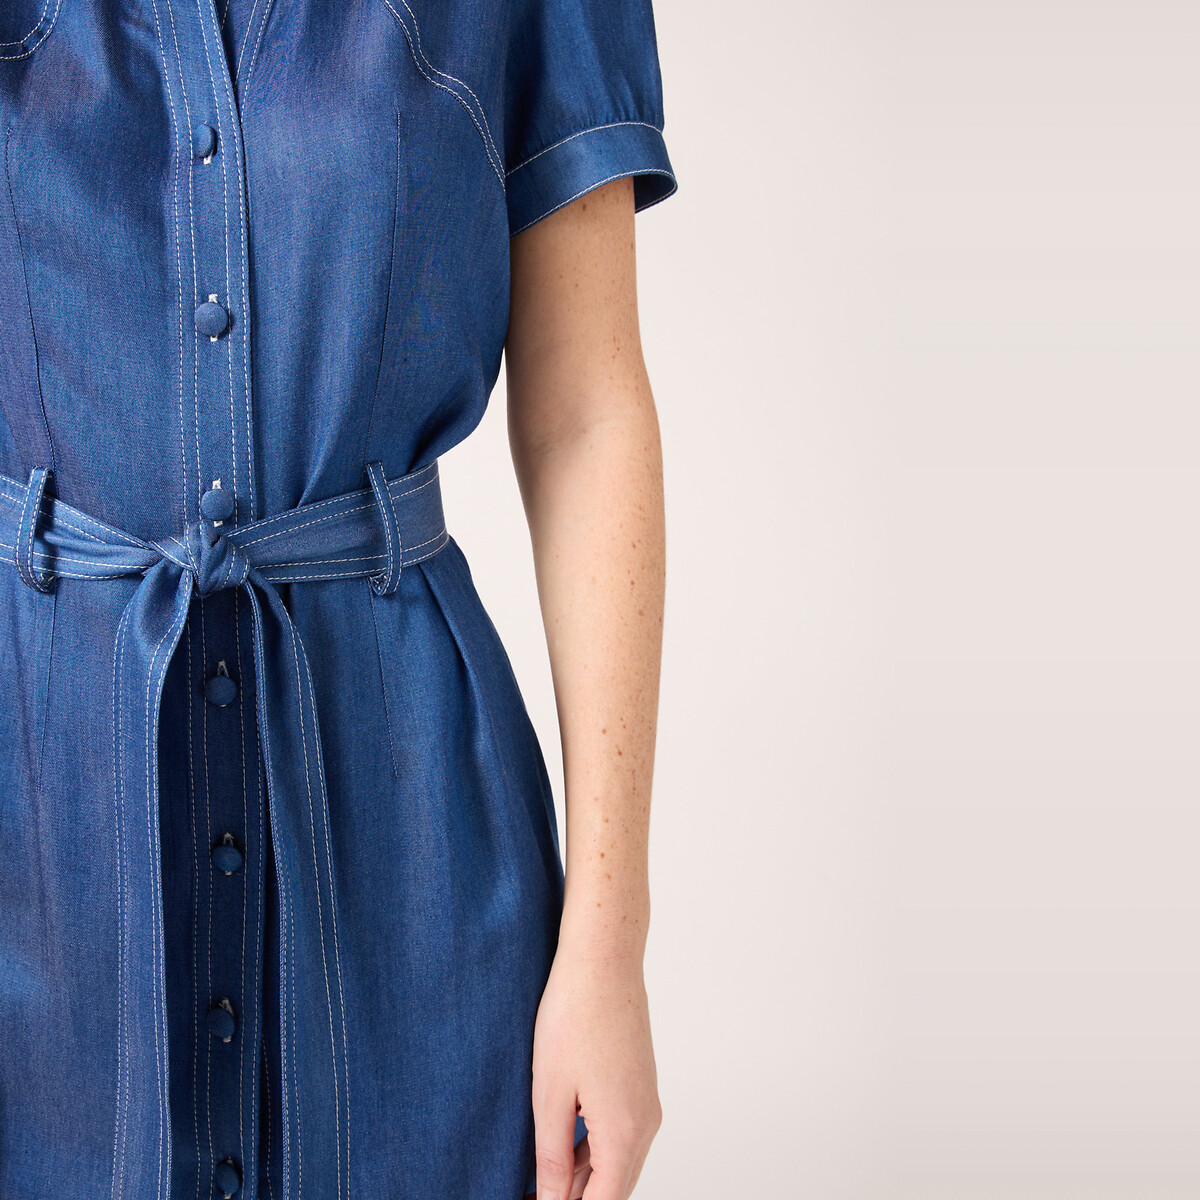 Платье Из вискозы на пуговицах спереди с ремешком 46 синий LaRedoute, размер 46 - фото 2